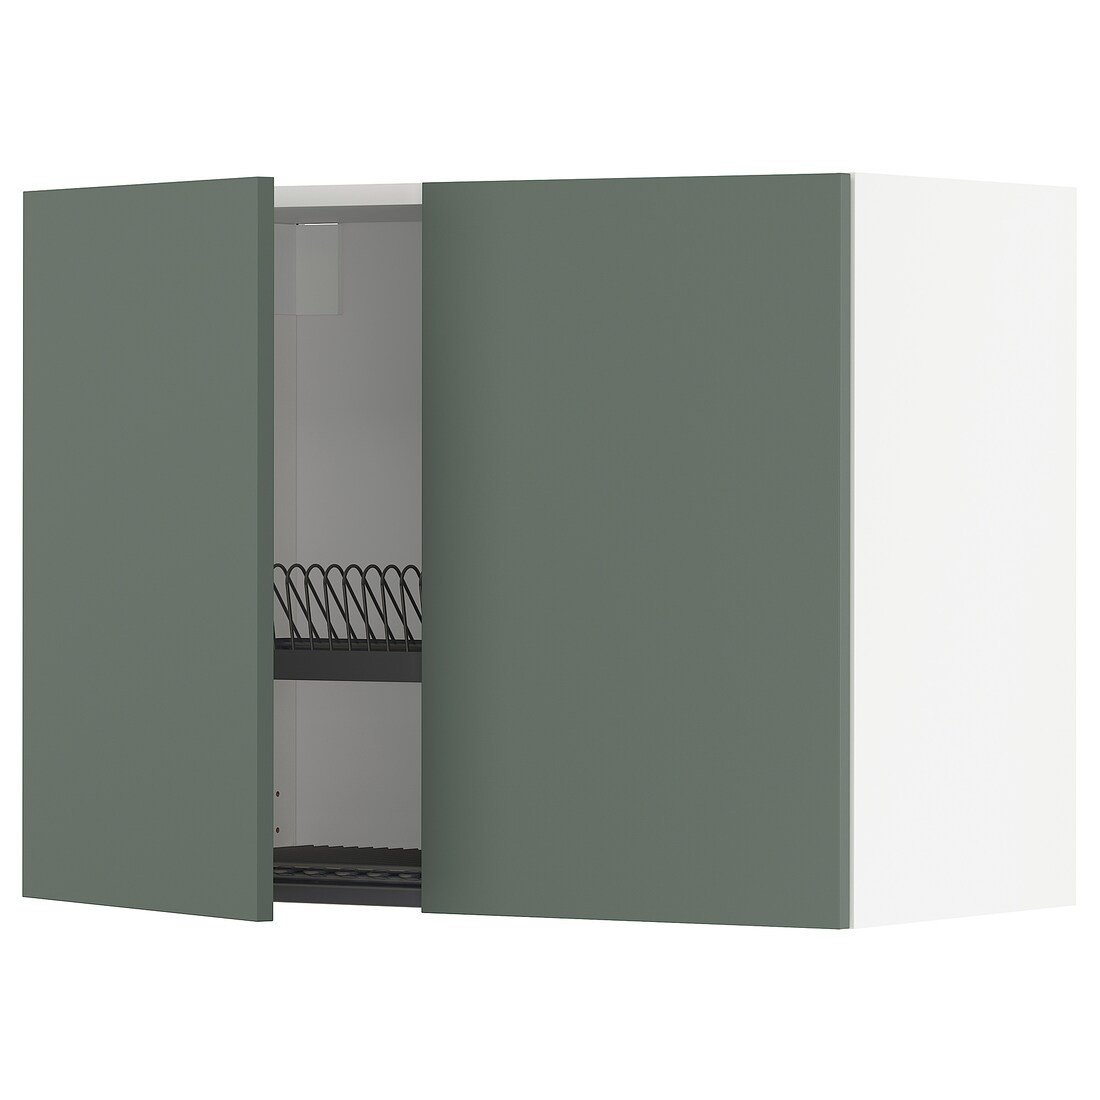 METOD МЕТОД Навісна шафа з посудою сушкою / 2 дверцят, білий / Bodarp сіро-зелений, 80x60 см